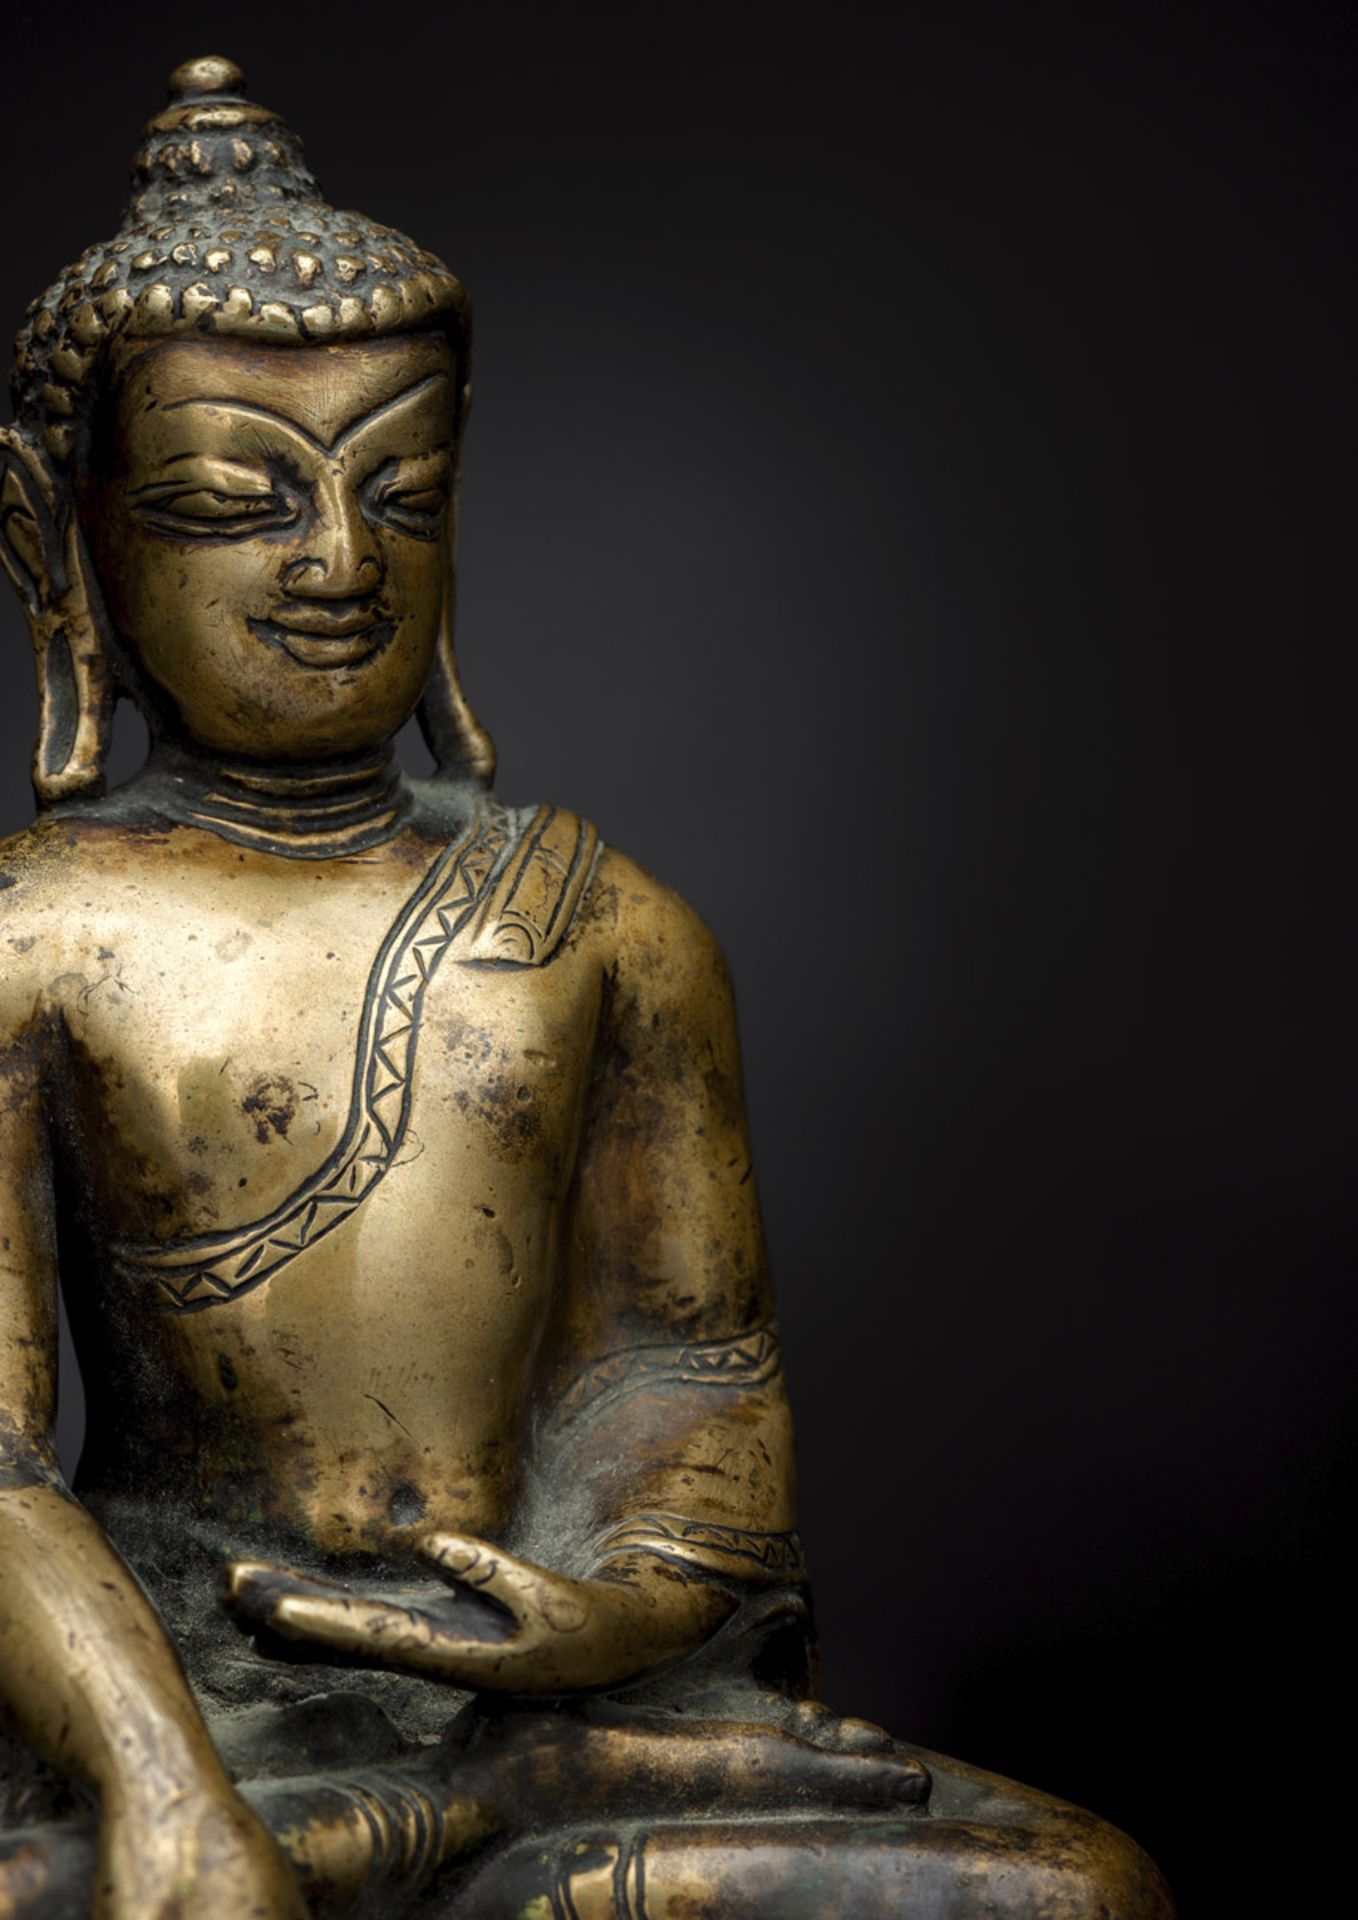 A BRONZE FIGURE OF BUDDHA SHAKYAMUNI - Image 2 of 2